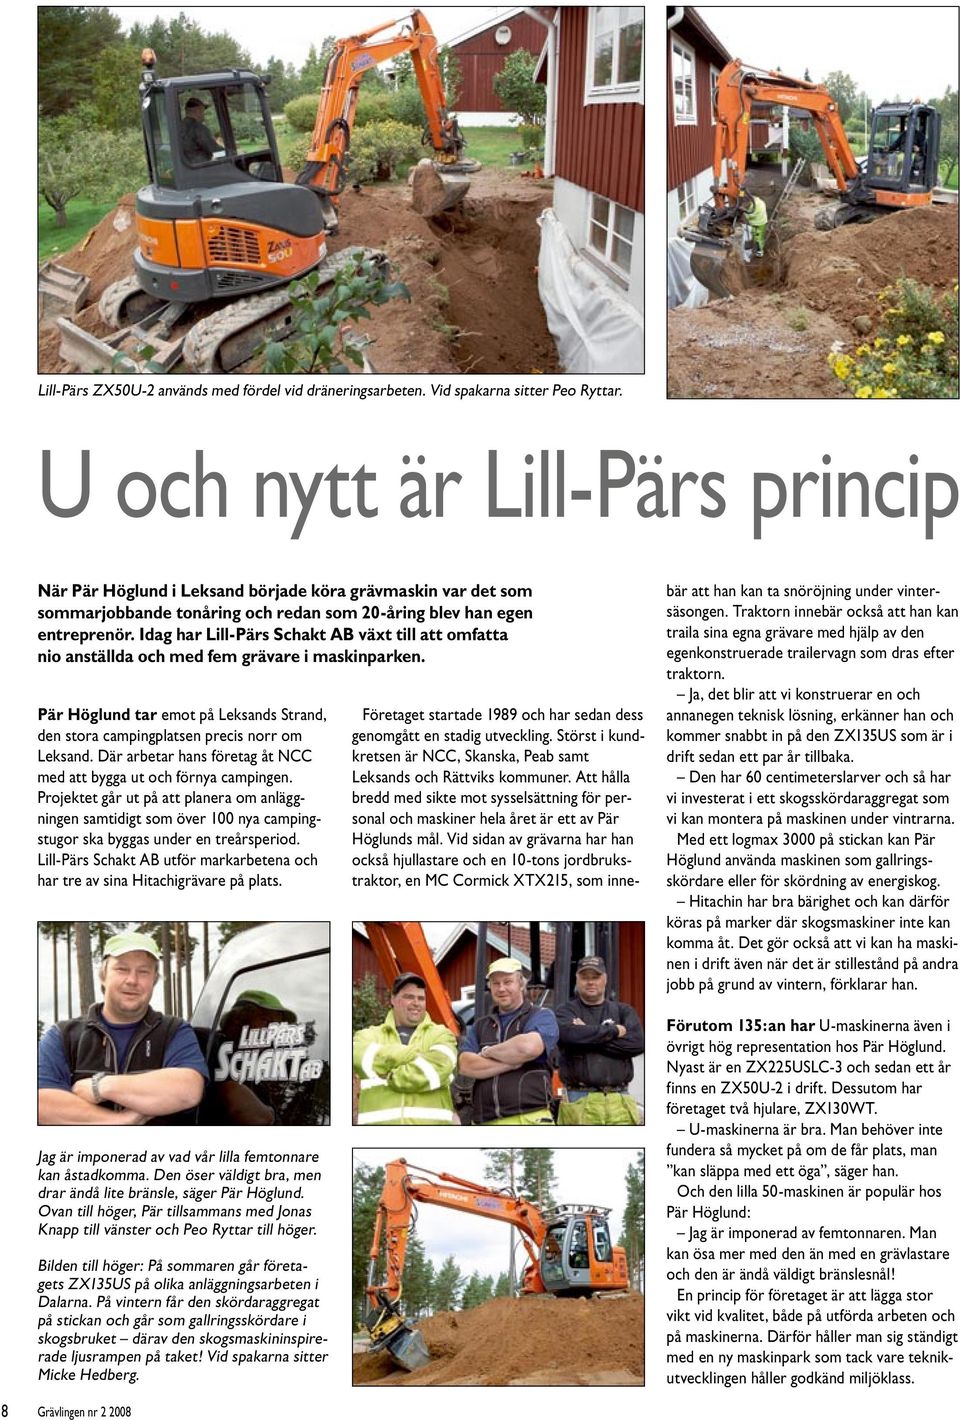 Idag har Lill-Pärs Schakt AB växt till att omfatta nio anställda och med fem grävare i maskinparken. Pär Höglund tar emot på Leksands Strand, den stora campingplatsen precis norr om Leksand.